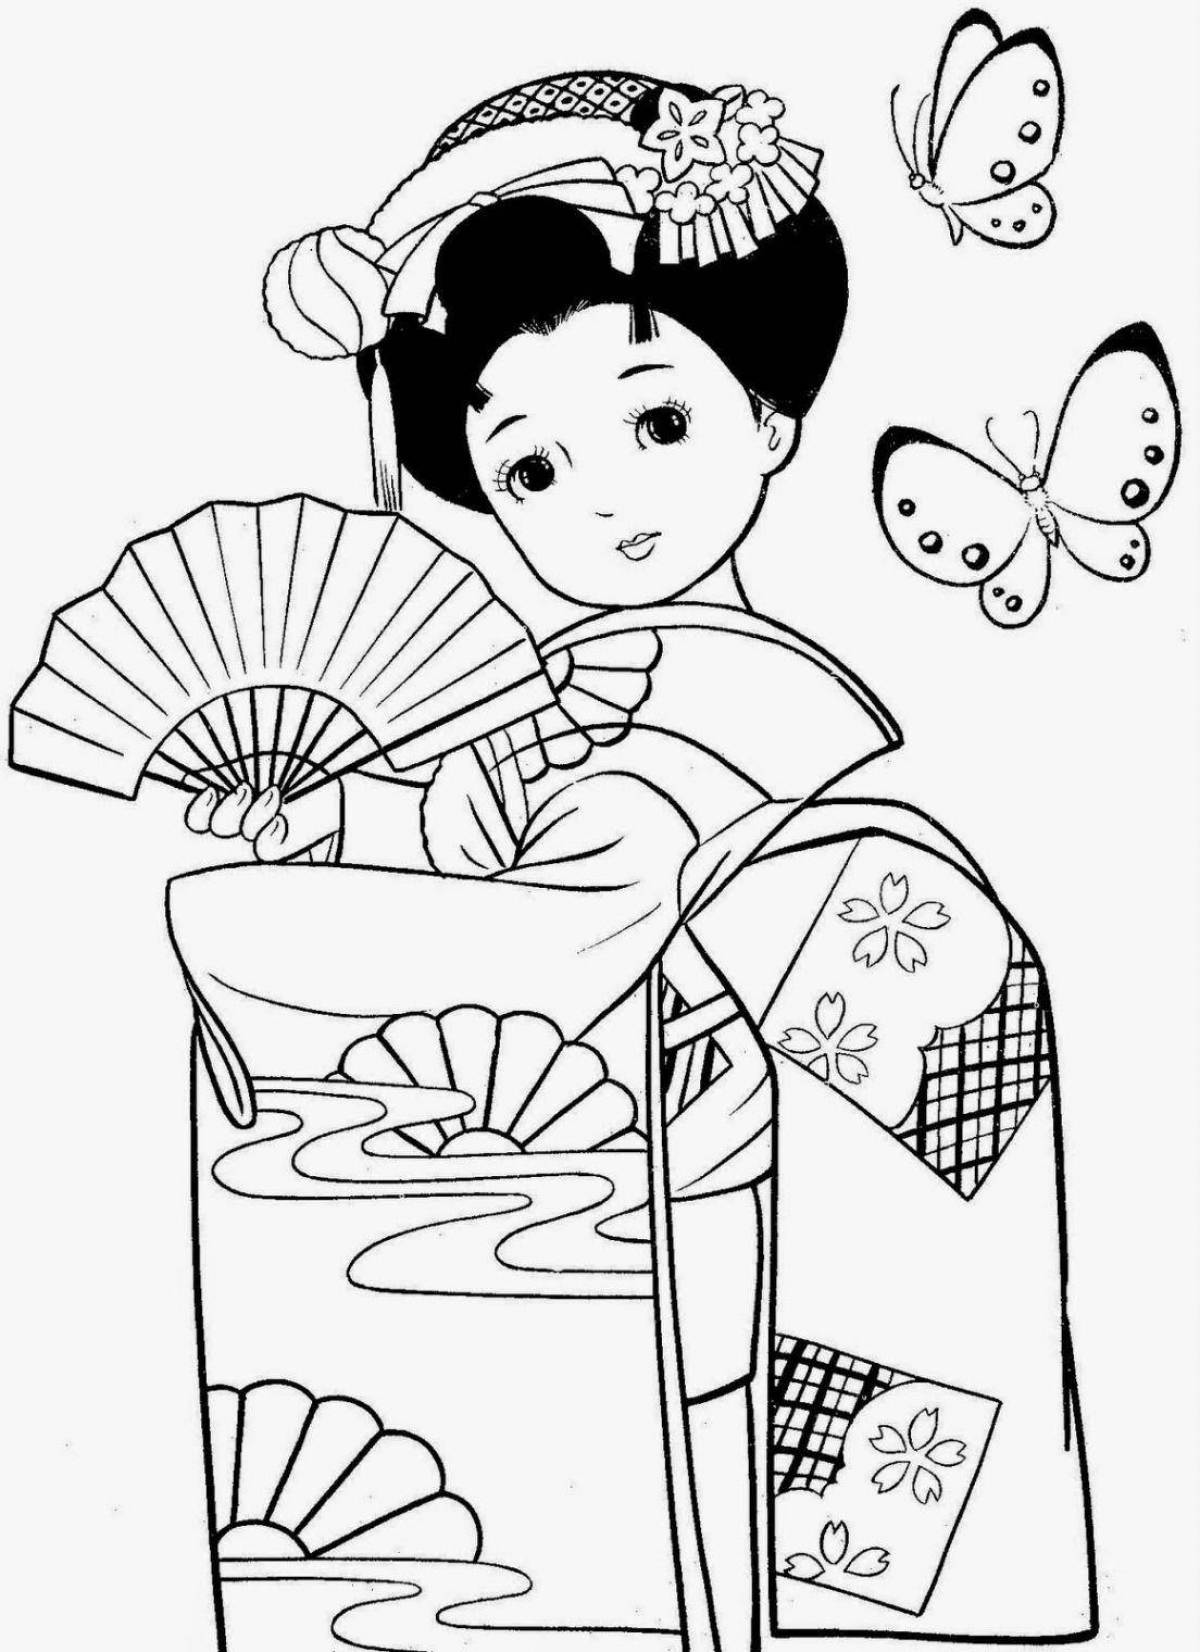 Children's kimono coloring book